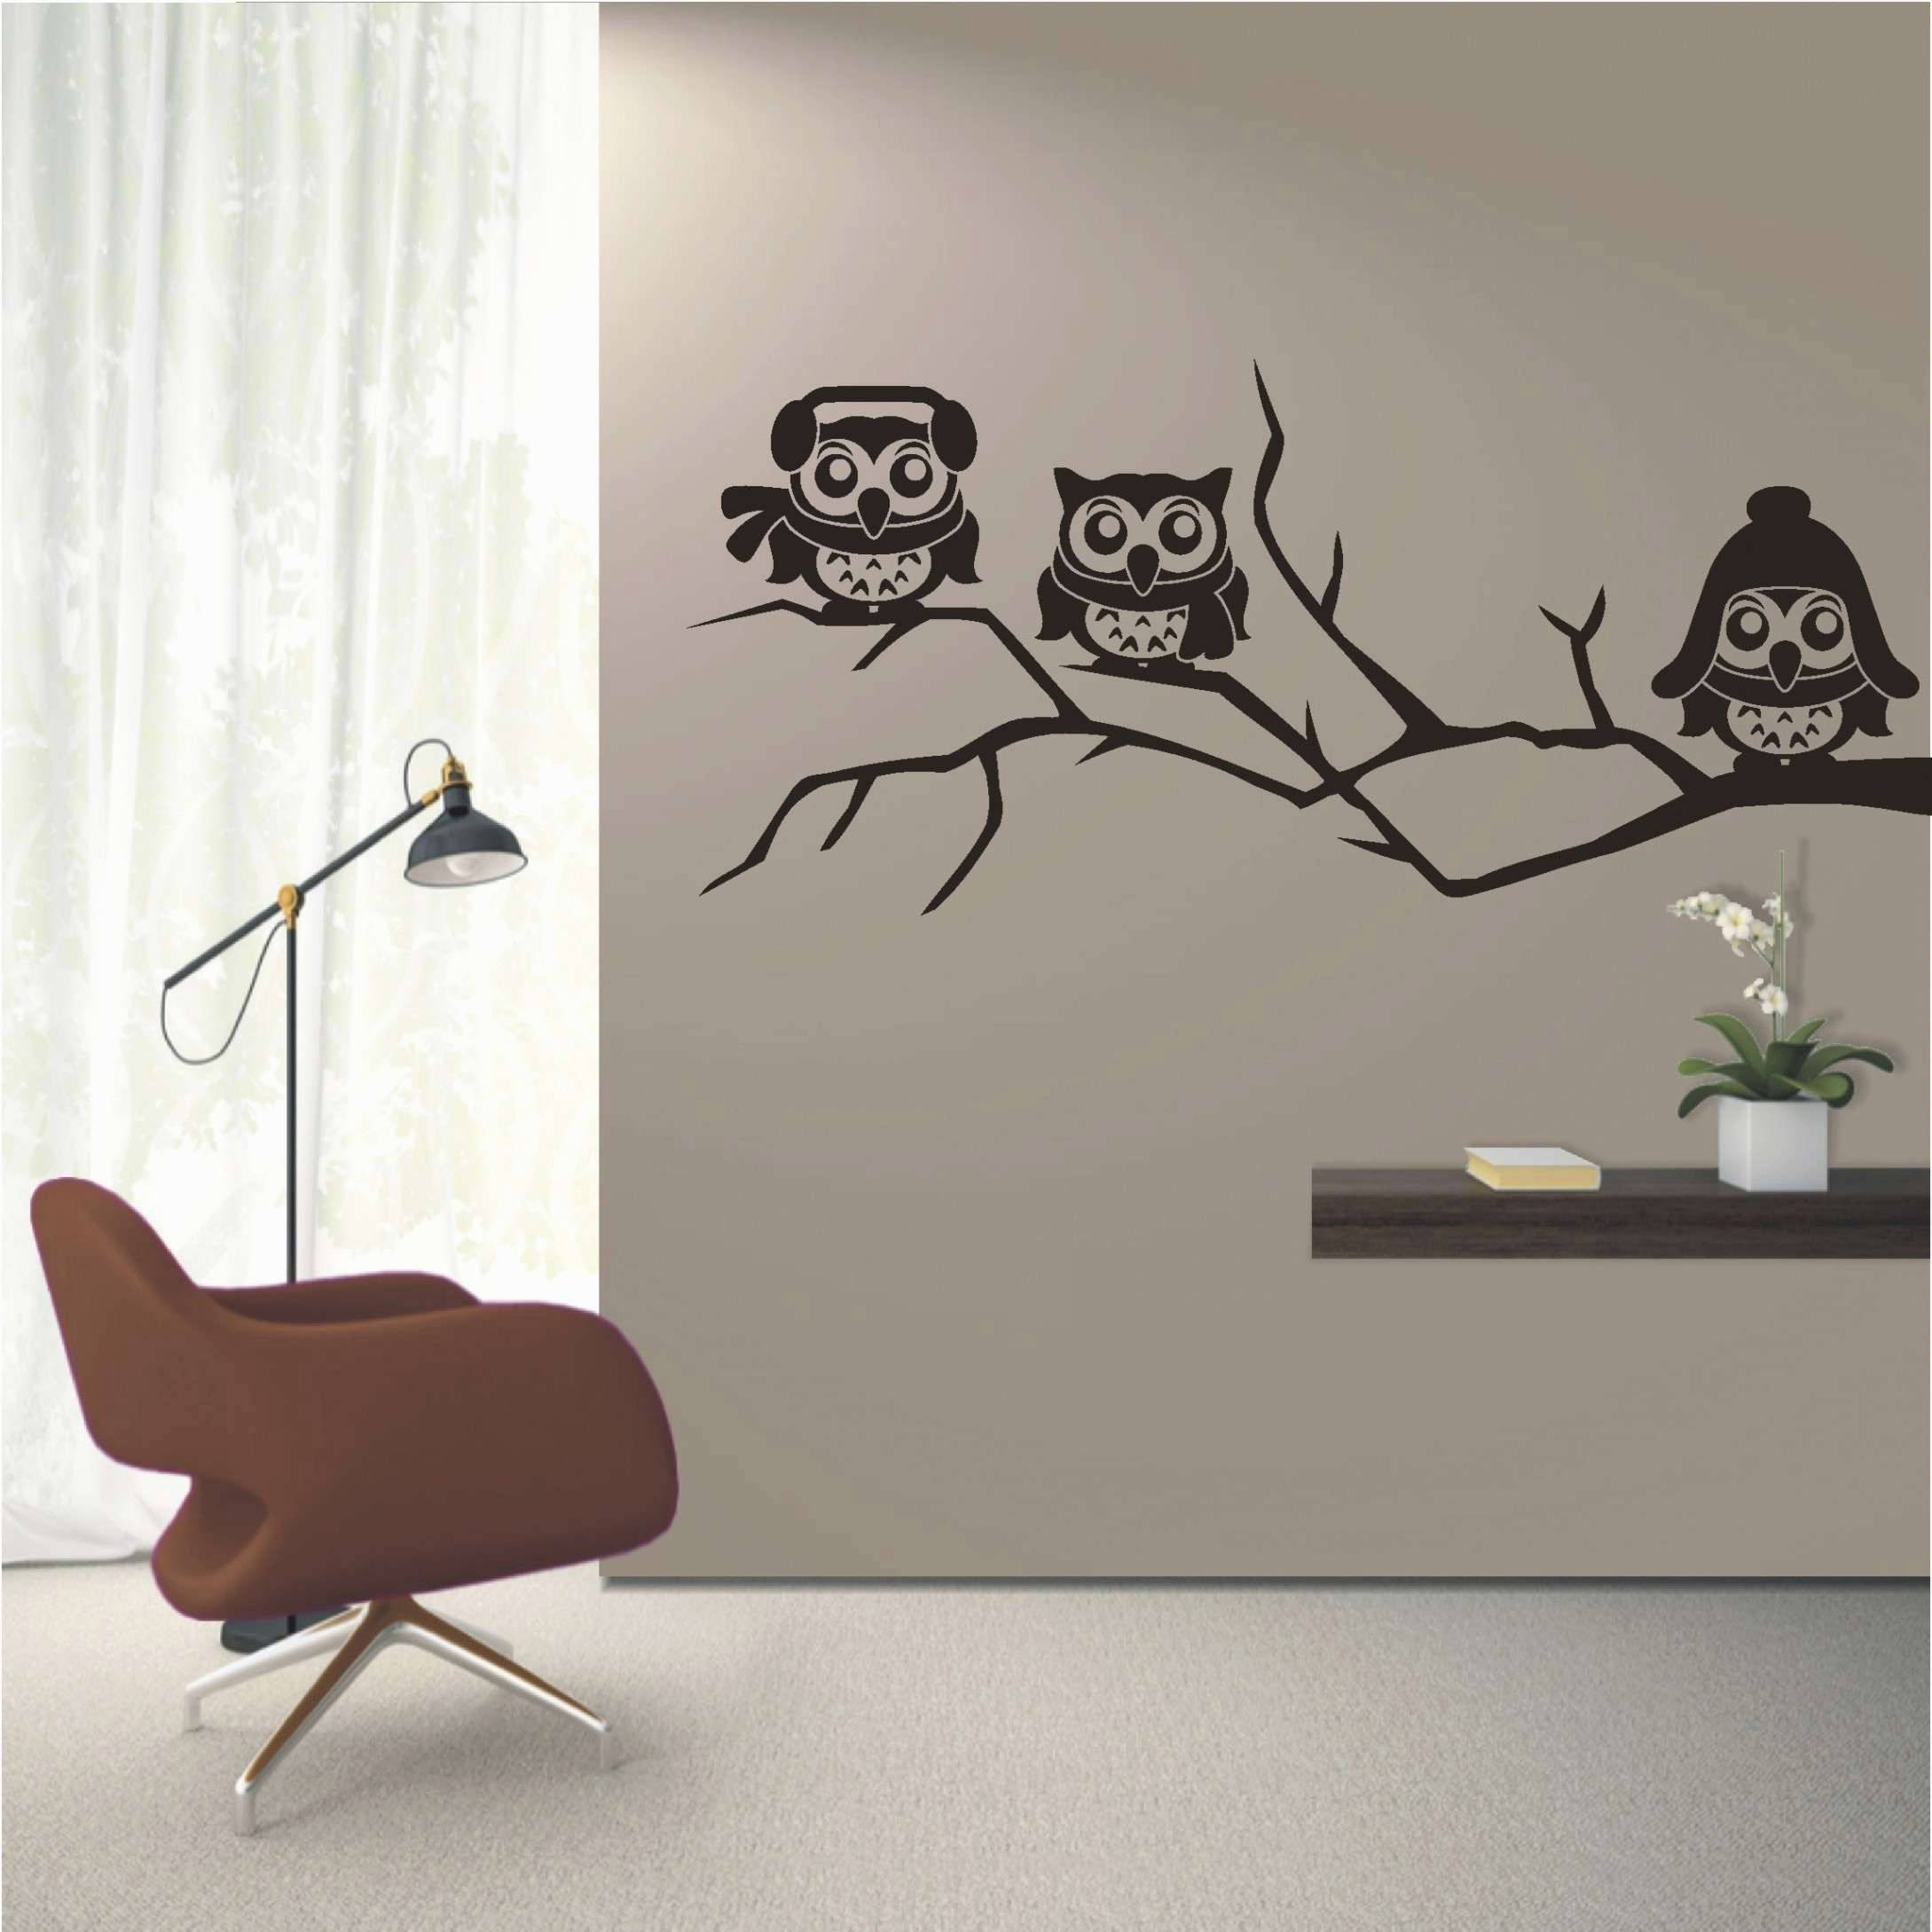 Garten Wand Inspirierend Wohnzimmer Deko Kerzenhalter Luxury 43 Elegant Deko Sticker Wand